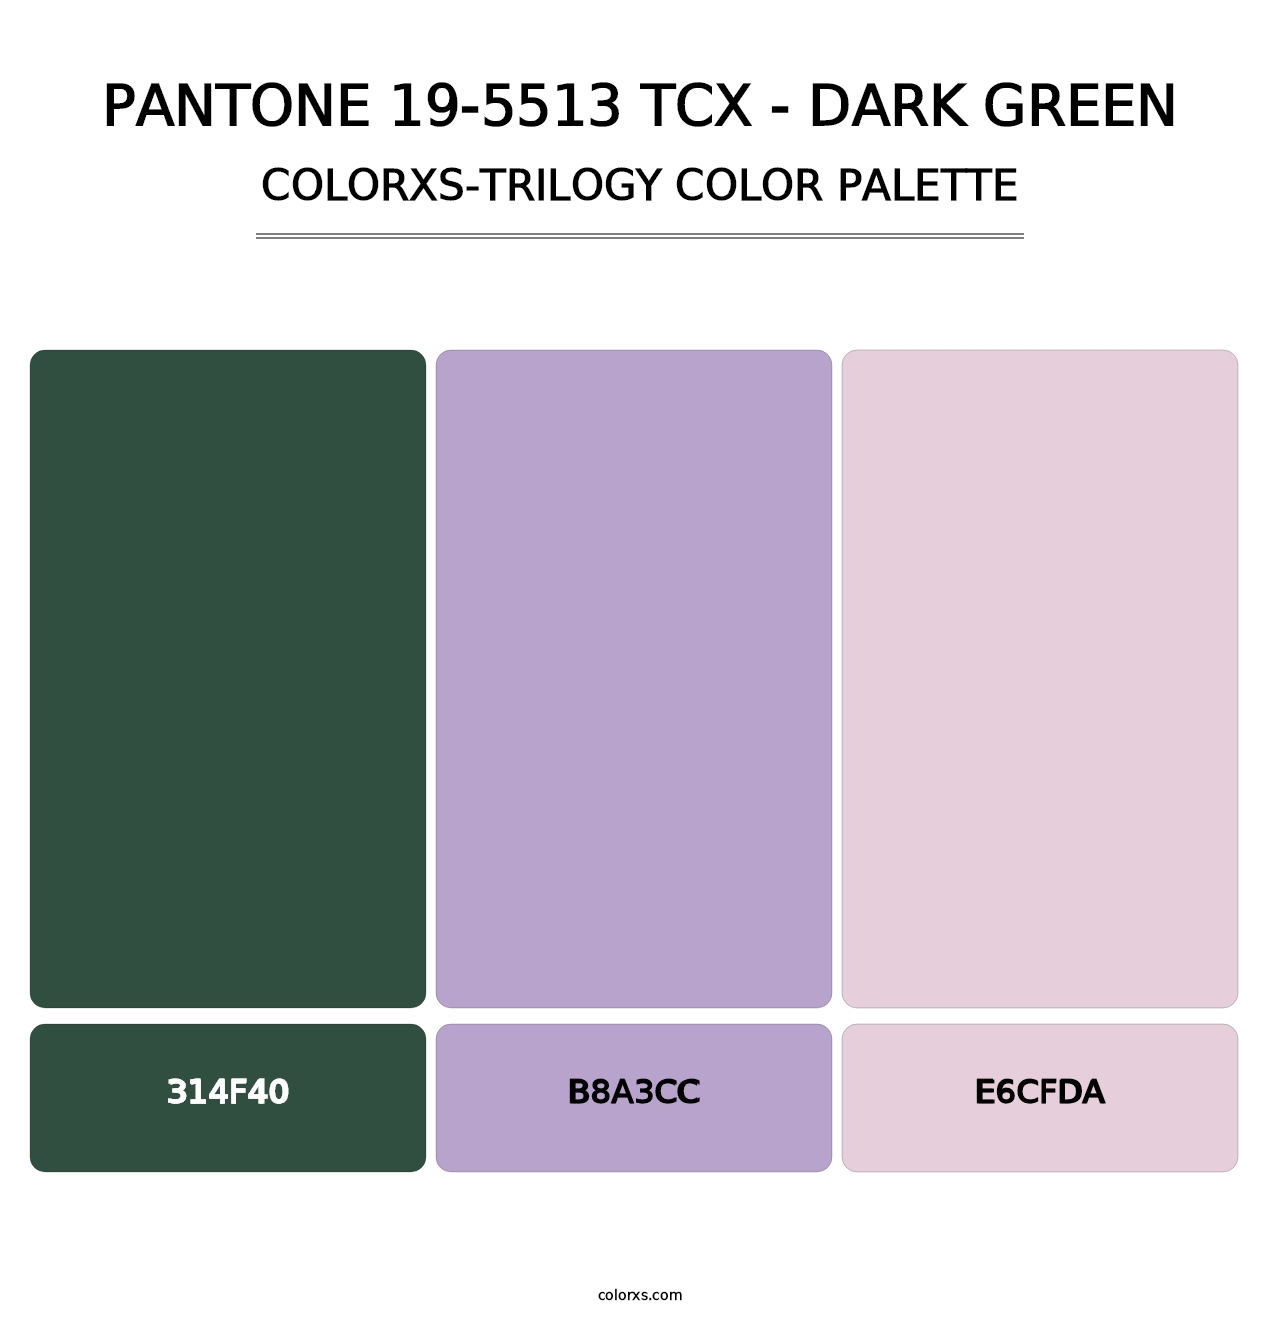 PANTONE 19-5513 TCX - Dark Green - Colorxs Trilogy Palette